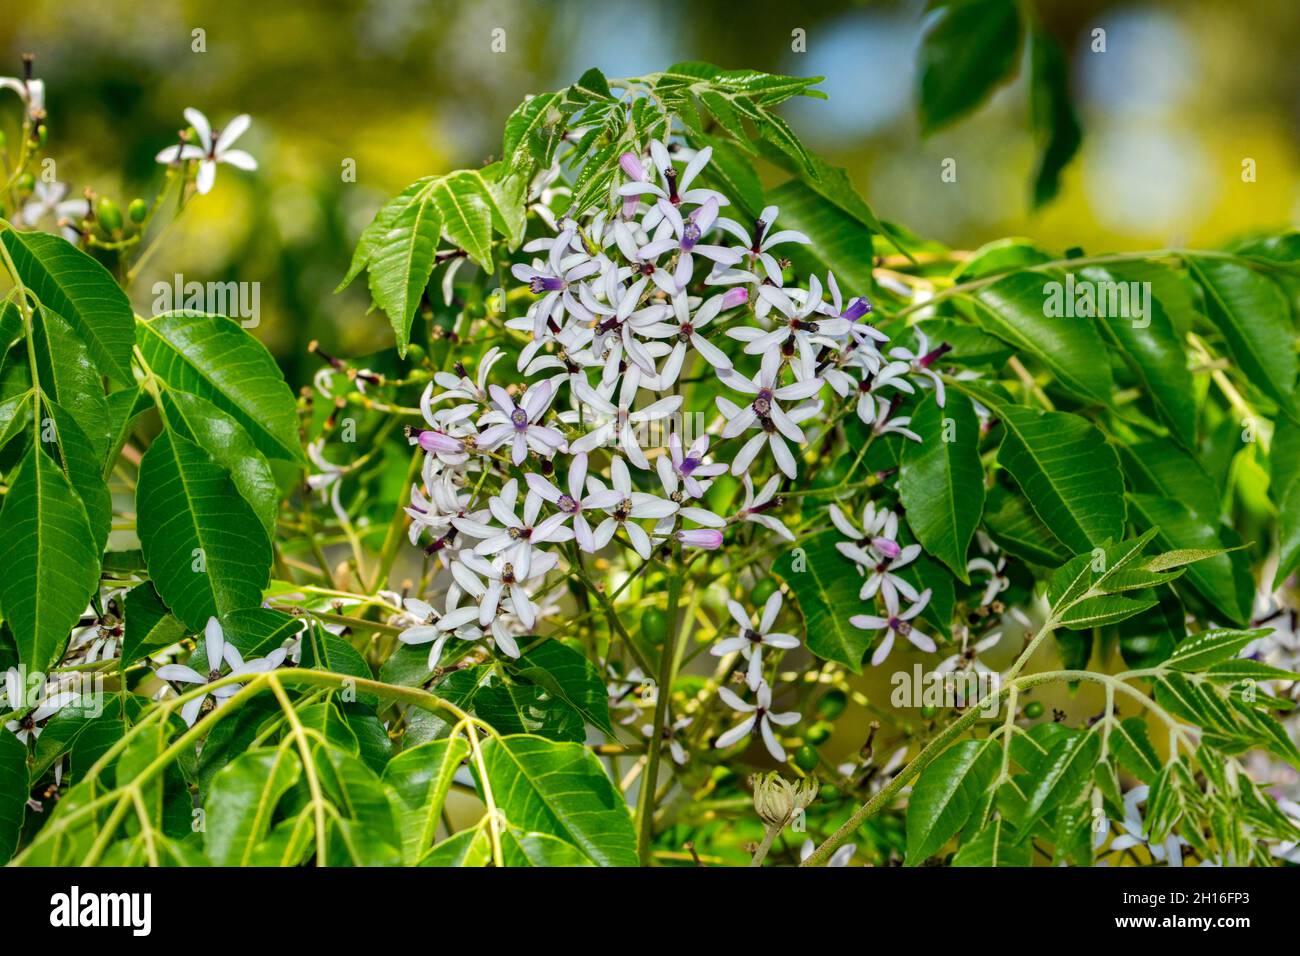 Grappolo di piccoli fiori di mauve e foglie verdi vivide di Melia azedarach, Chinaberry / albero di cedro bianco, una specie di albero nativo australiano deciduo Foto Stock